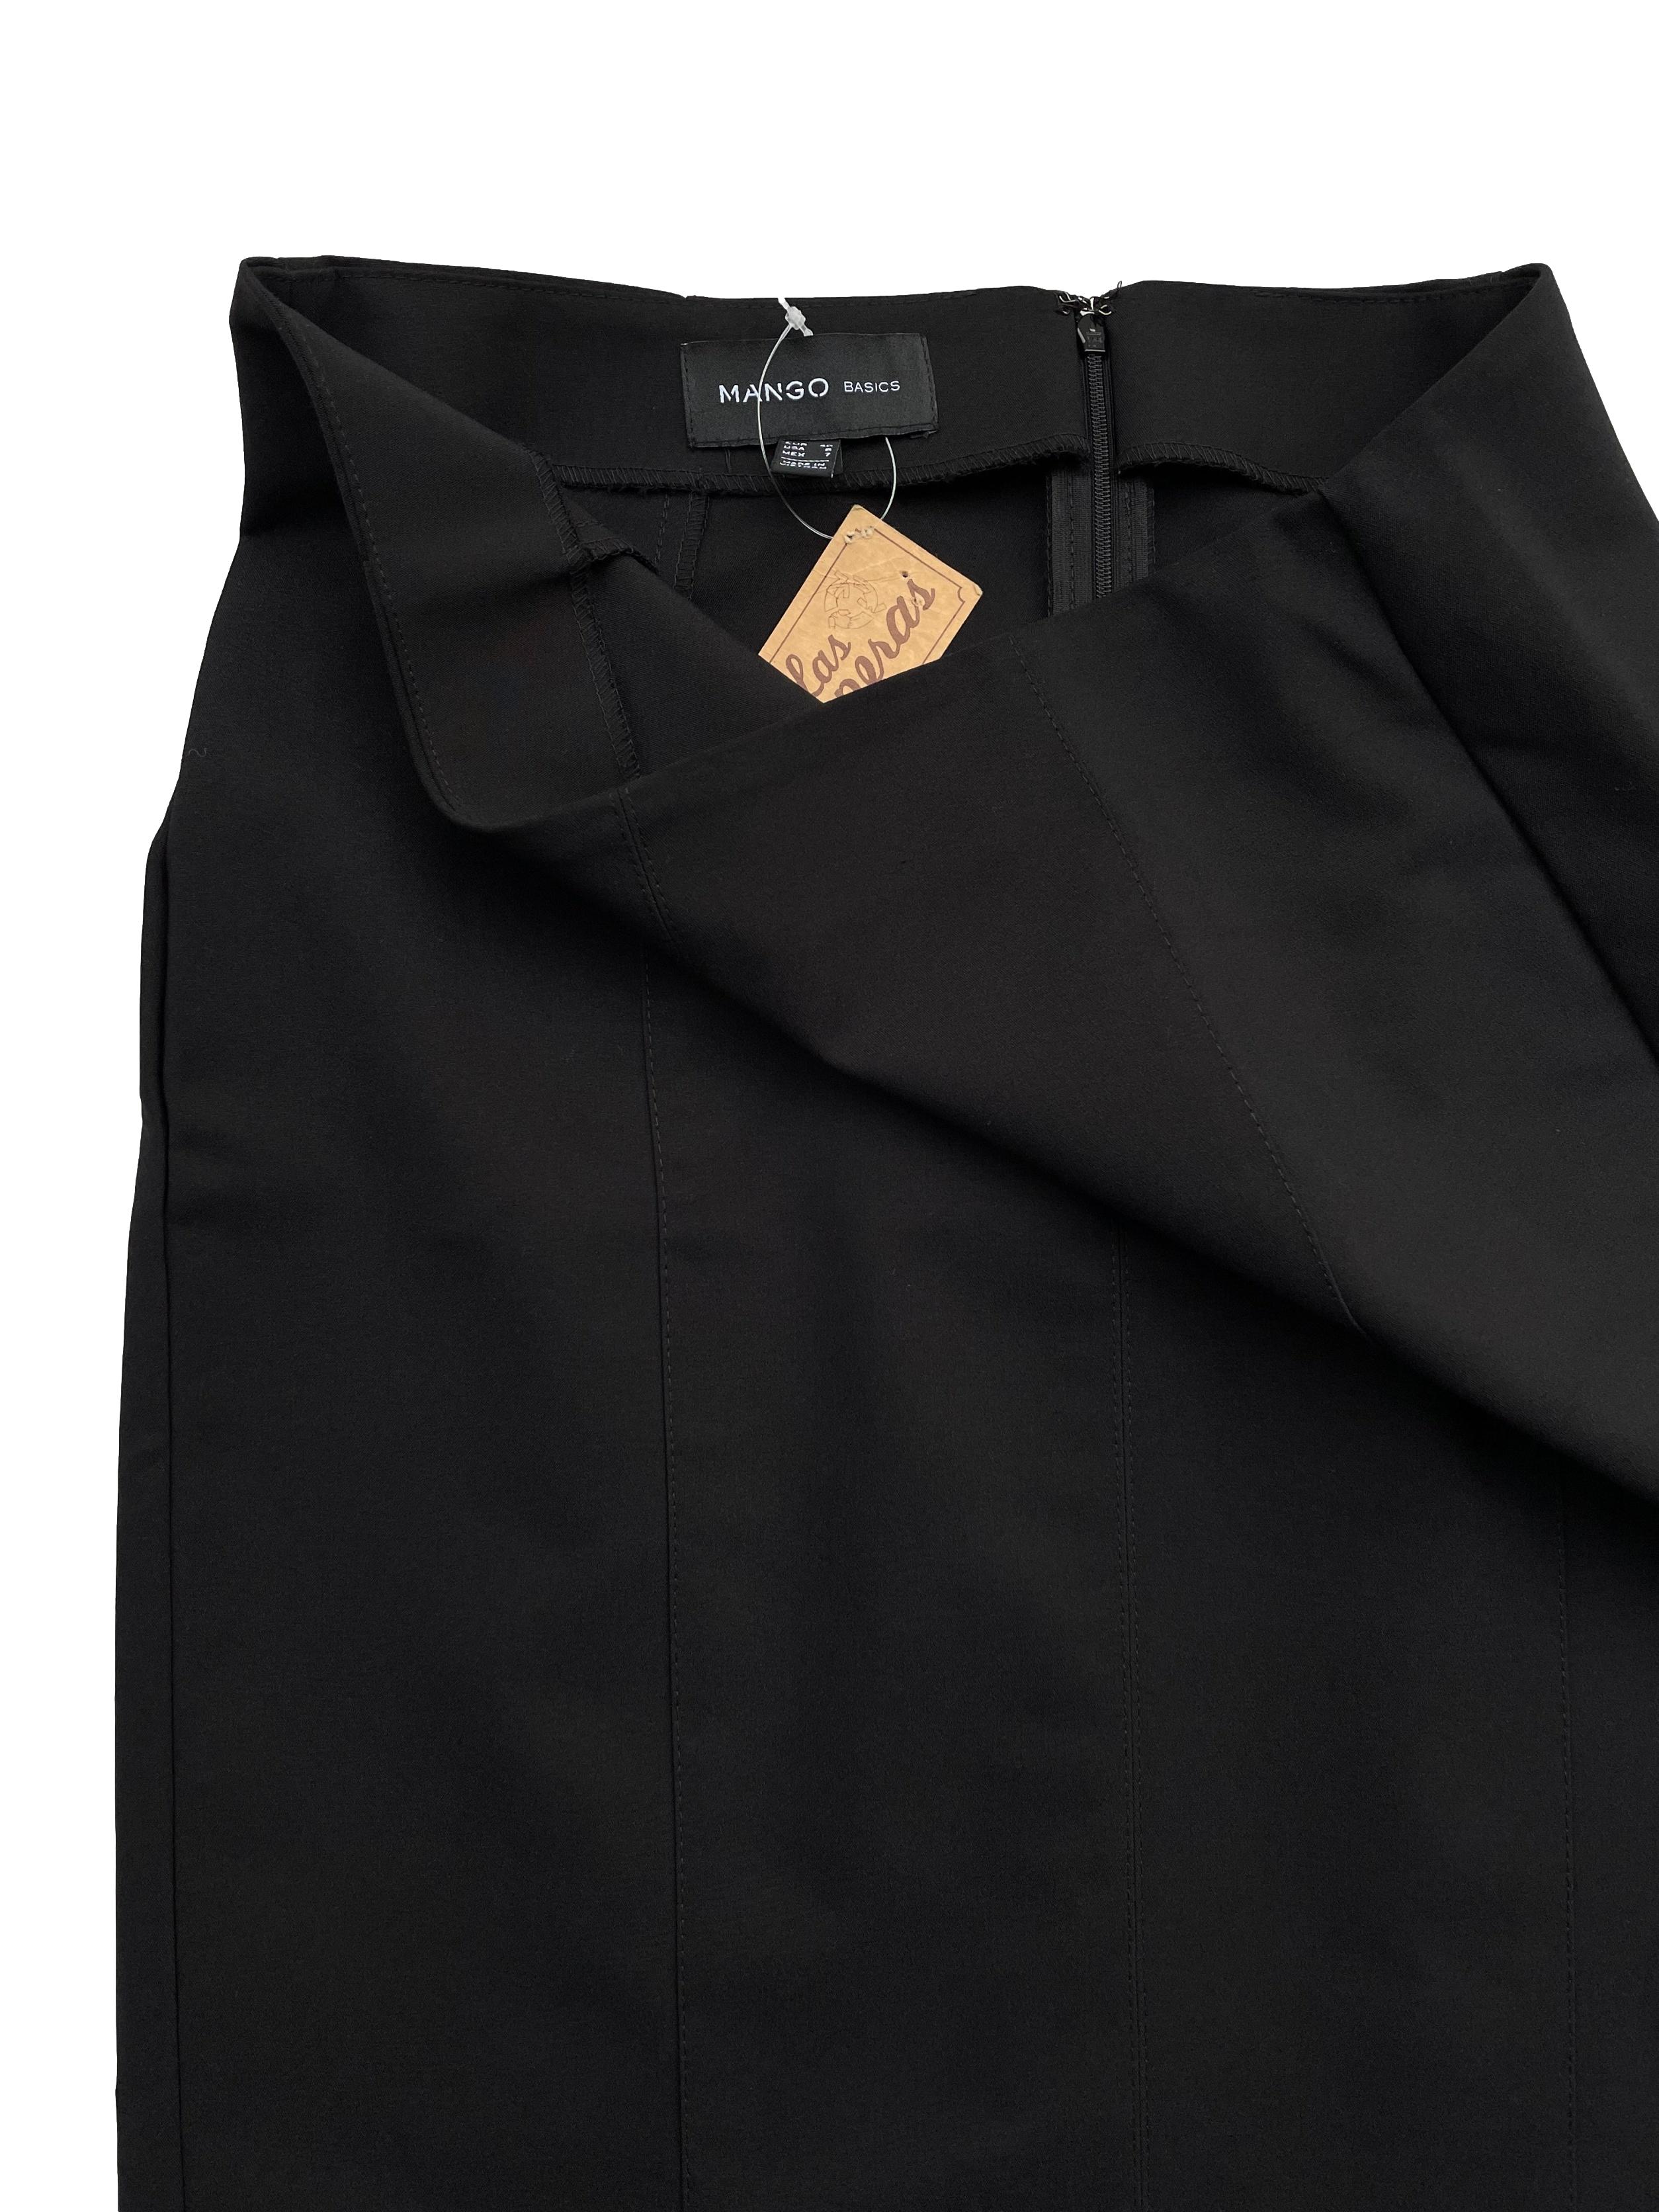 Falda formal Mango negra, mezcla de algodón, costuras verticales, corte recto y cierre posterior. Cintura 78cm Largo 57cm